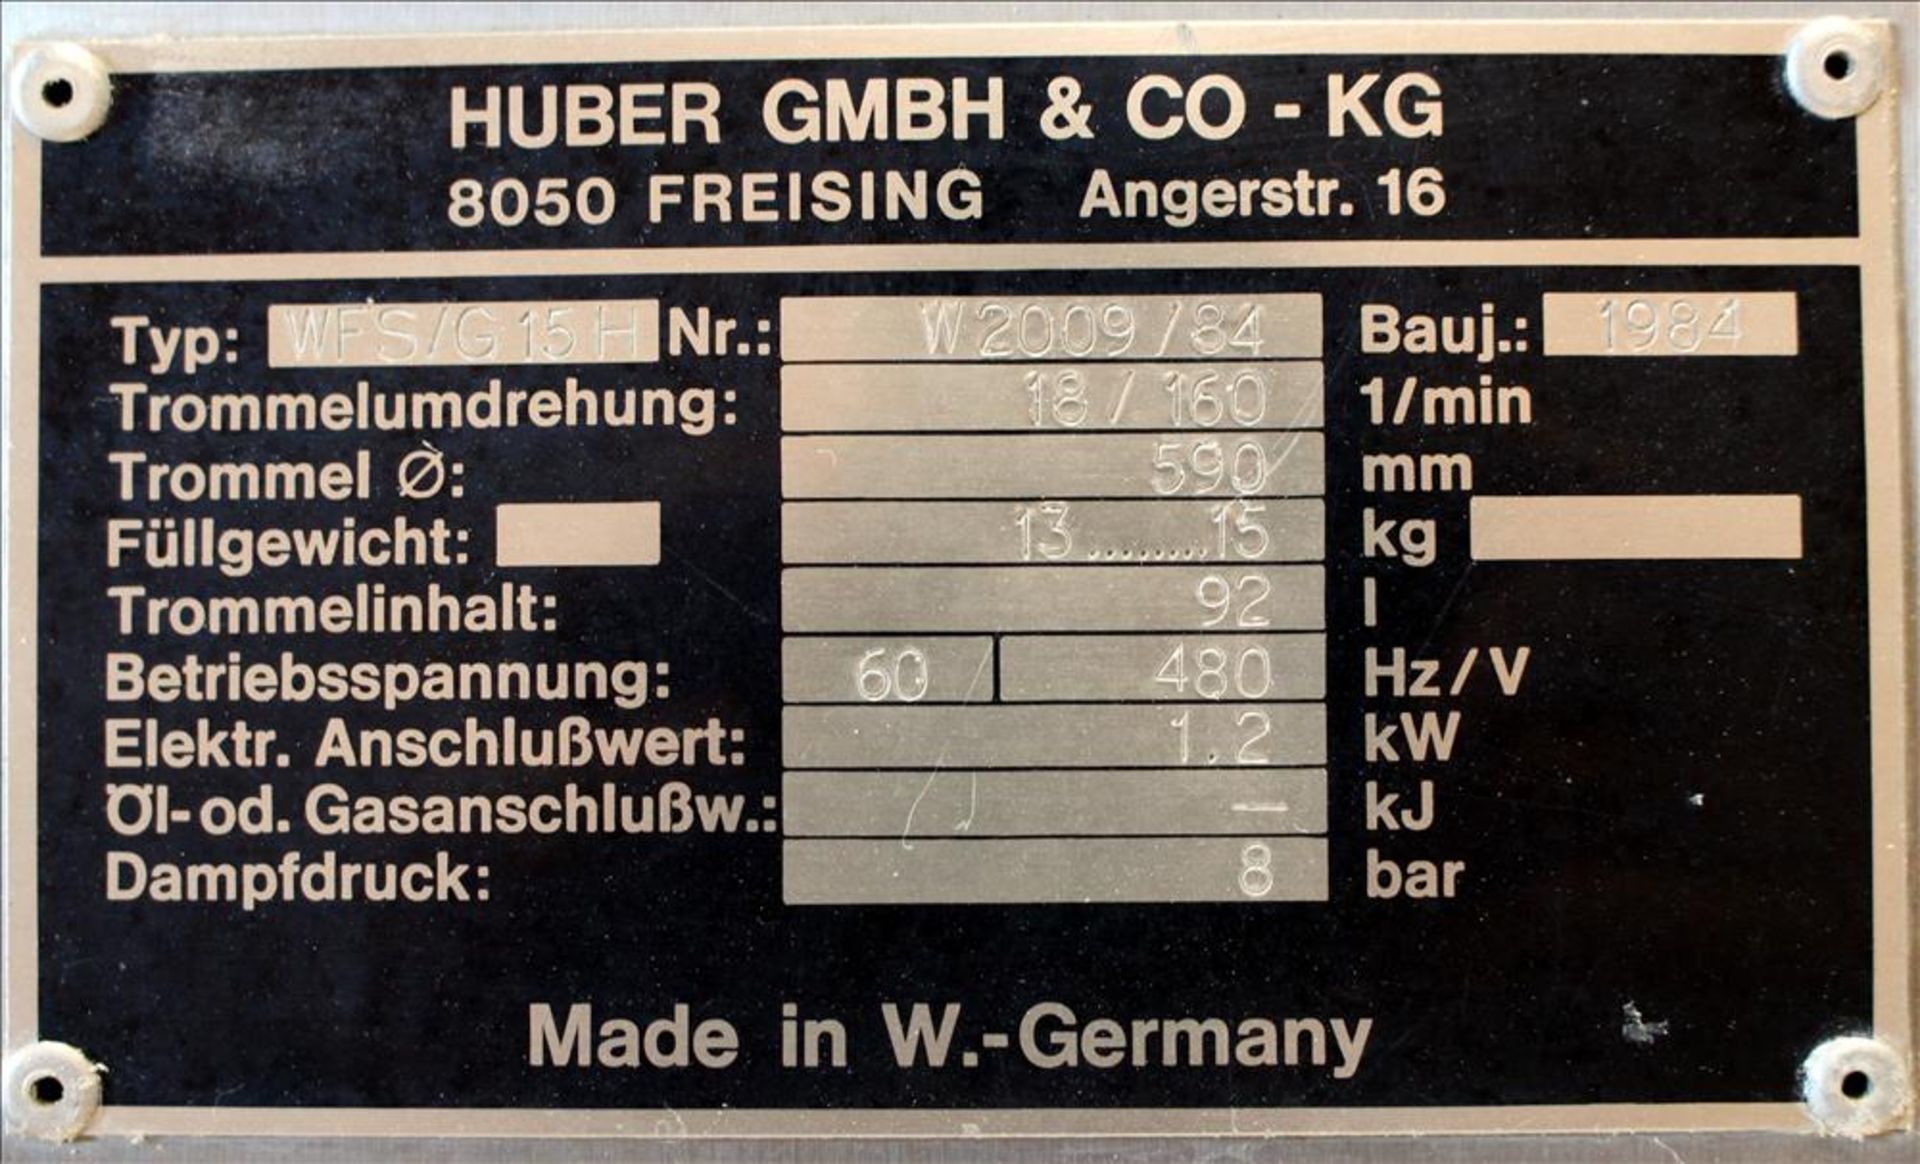 Huber Model WFS/G15H Stopper Washer/Sterilizer - Image 20 of 20